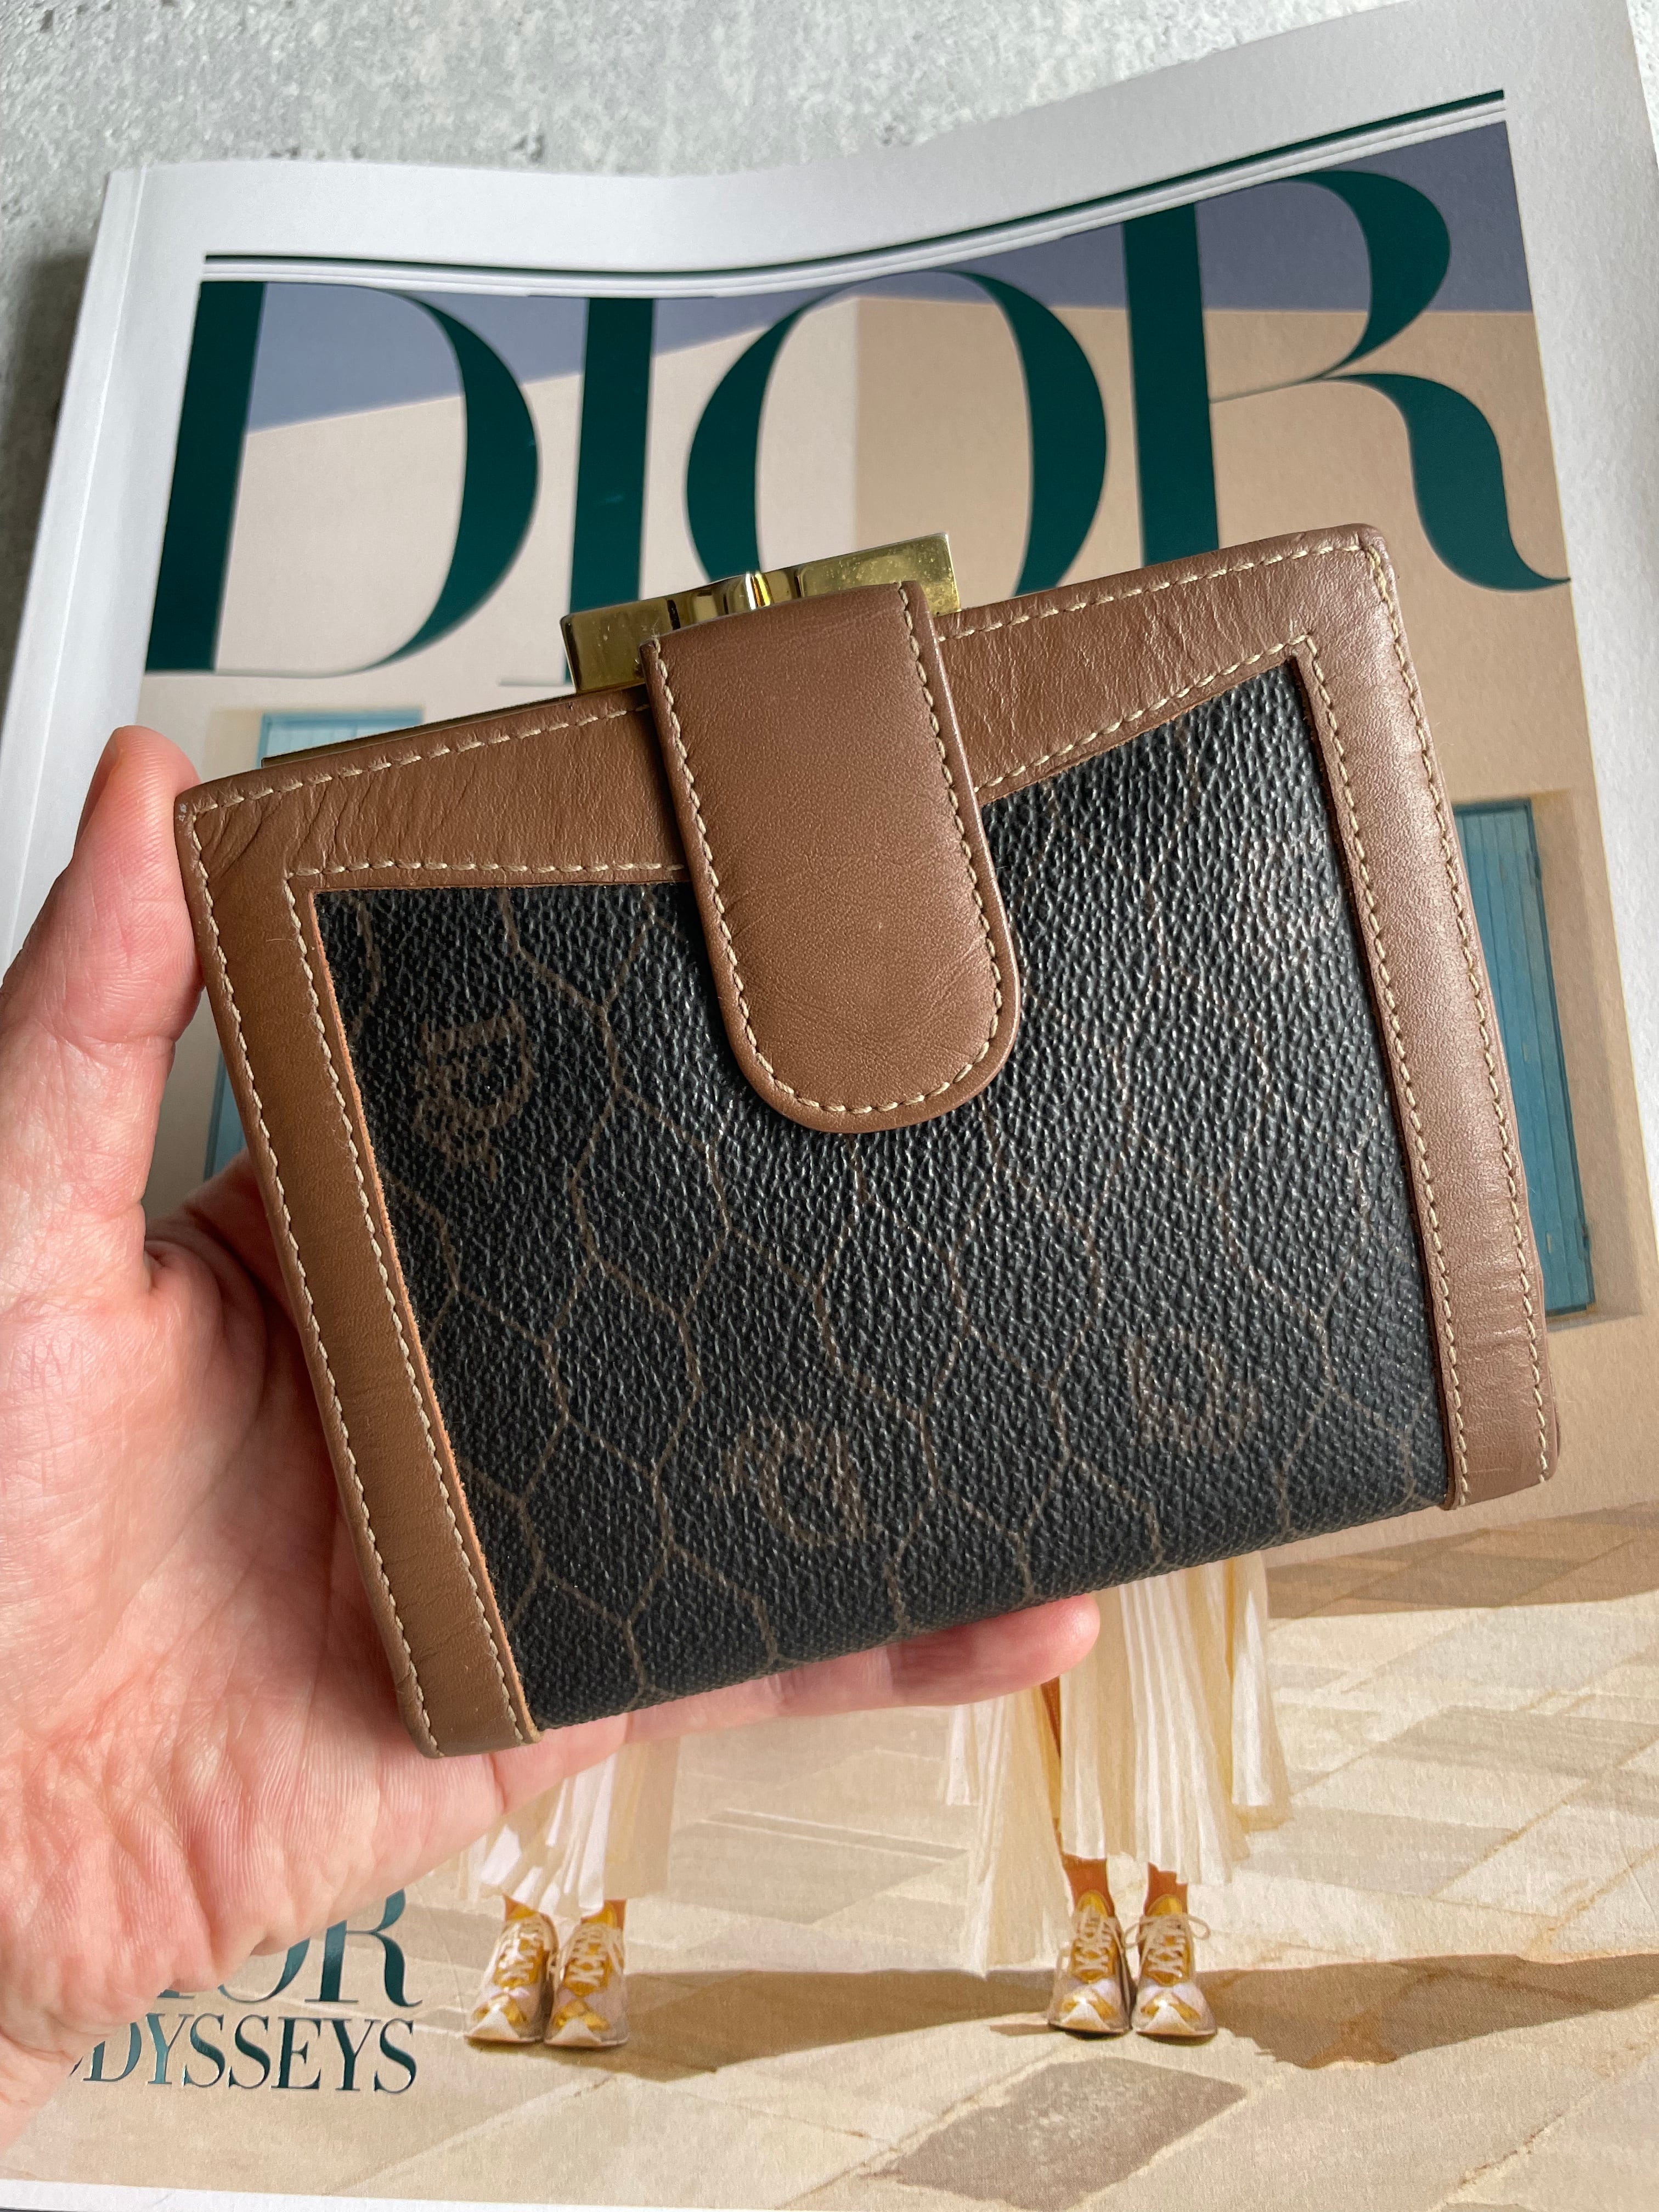 Christian Dior ハニカム柄 がま口財布 Dior dior ディオール 